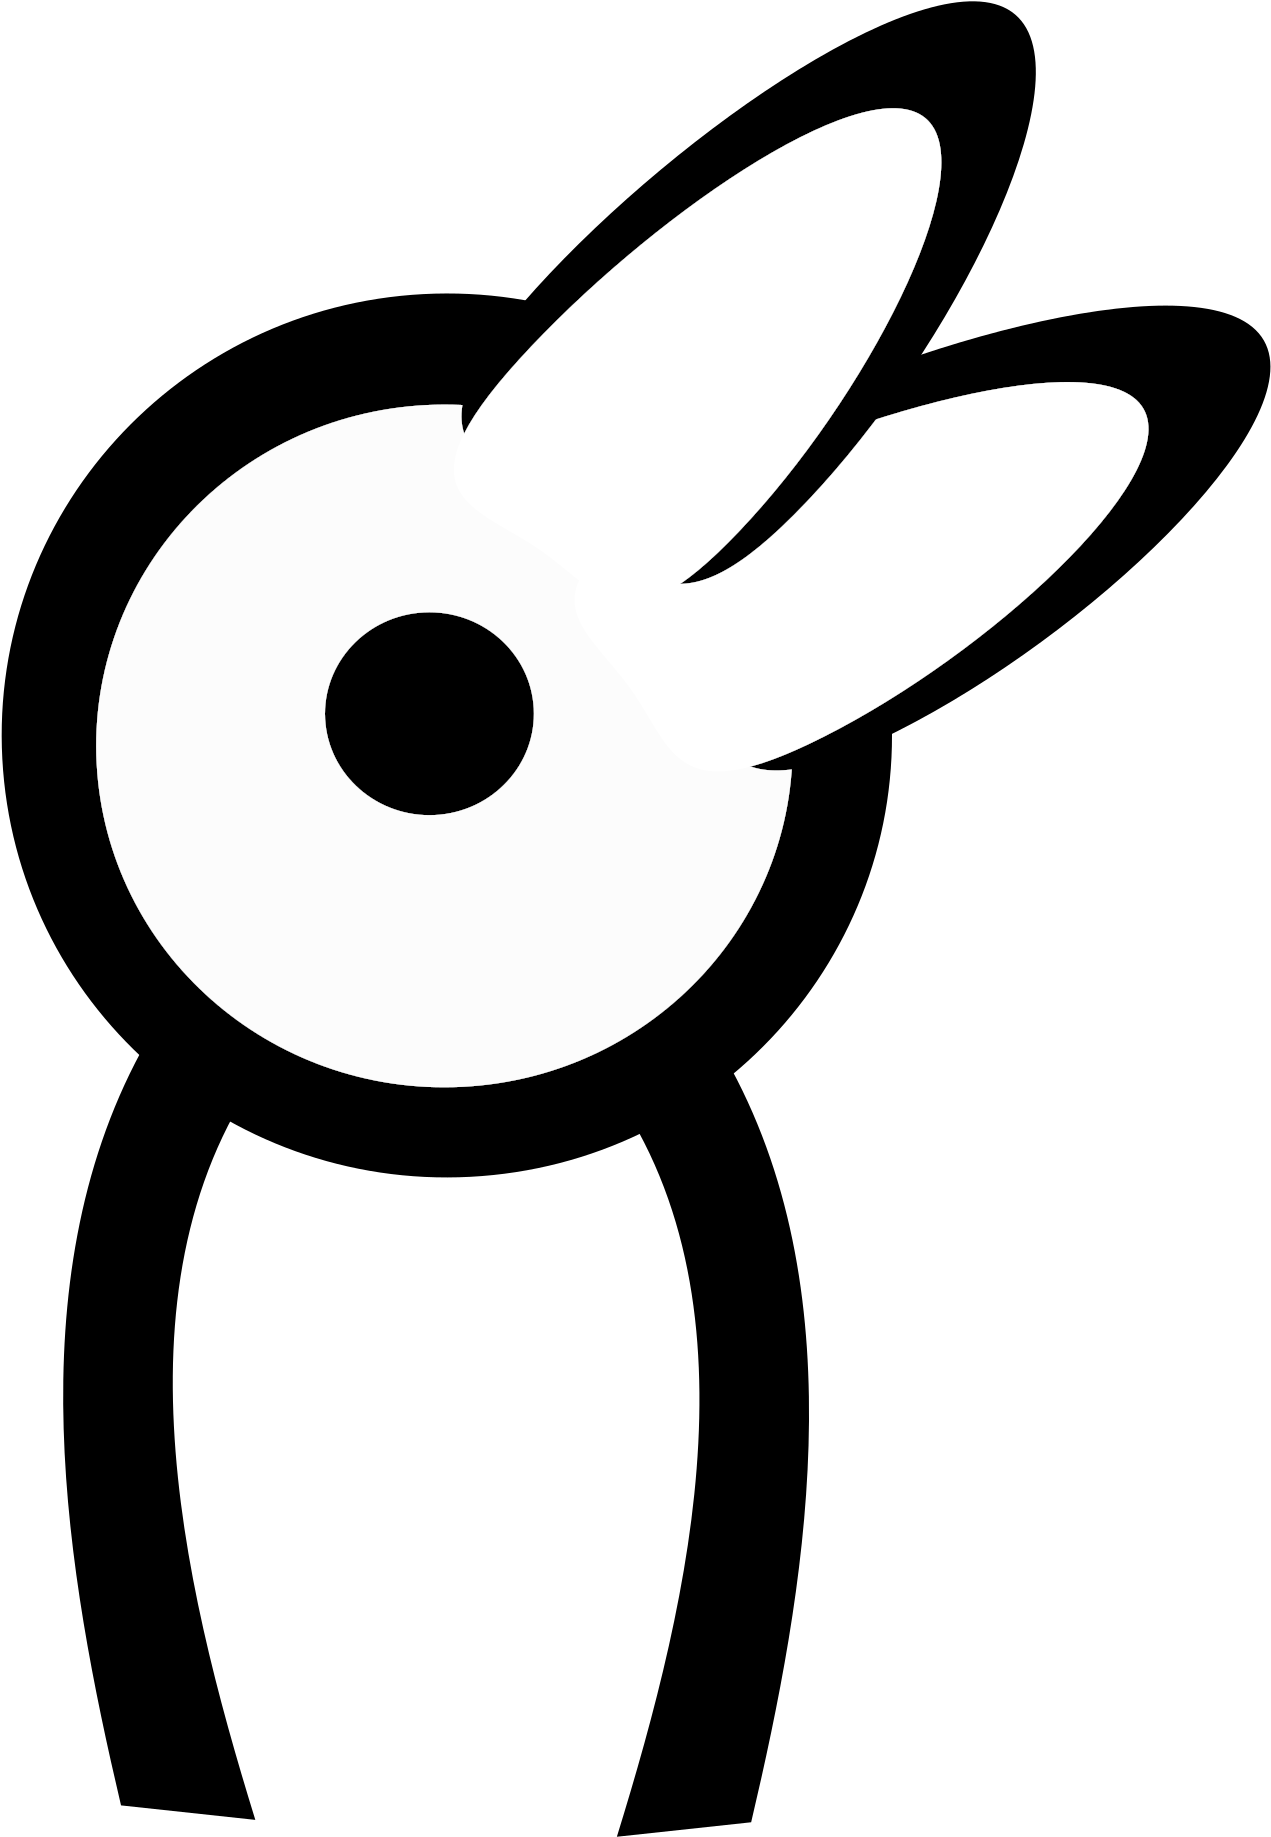 Big Image - Rabbit (1697x2400)